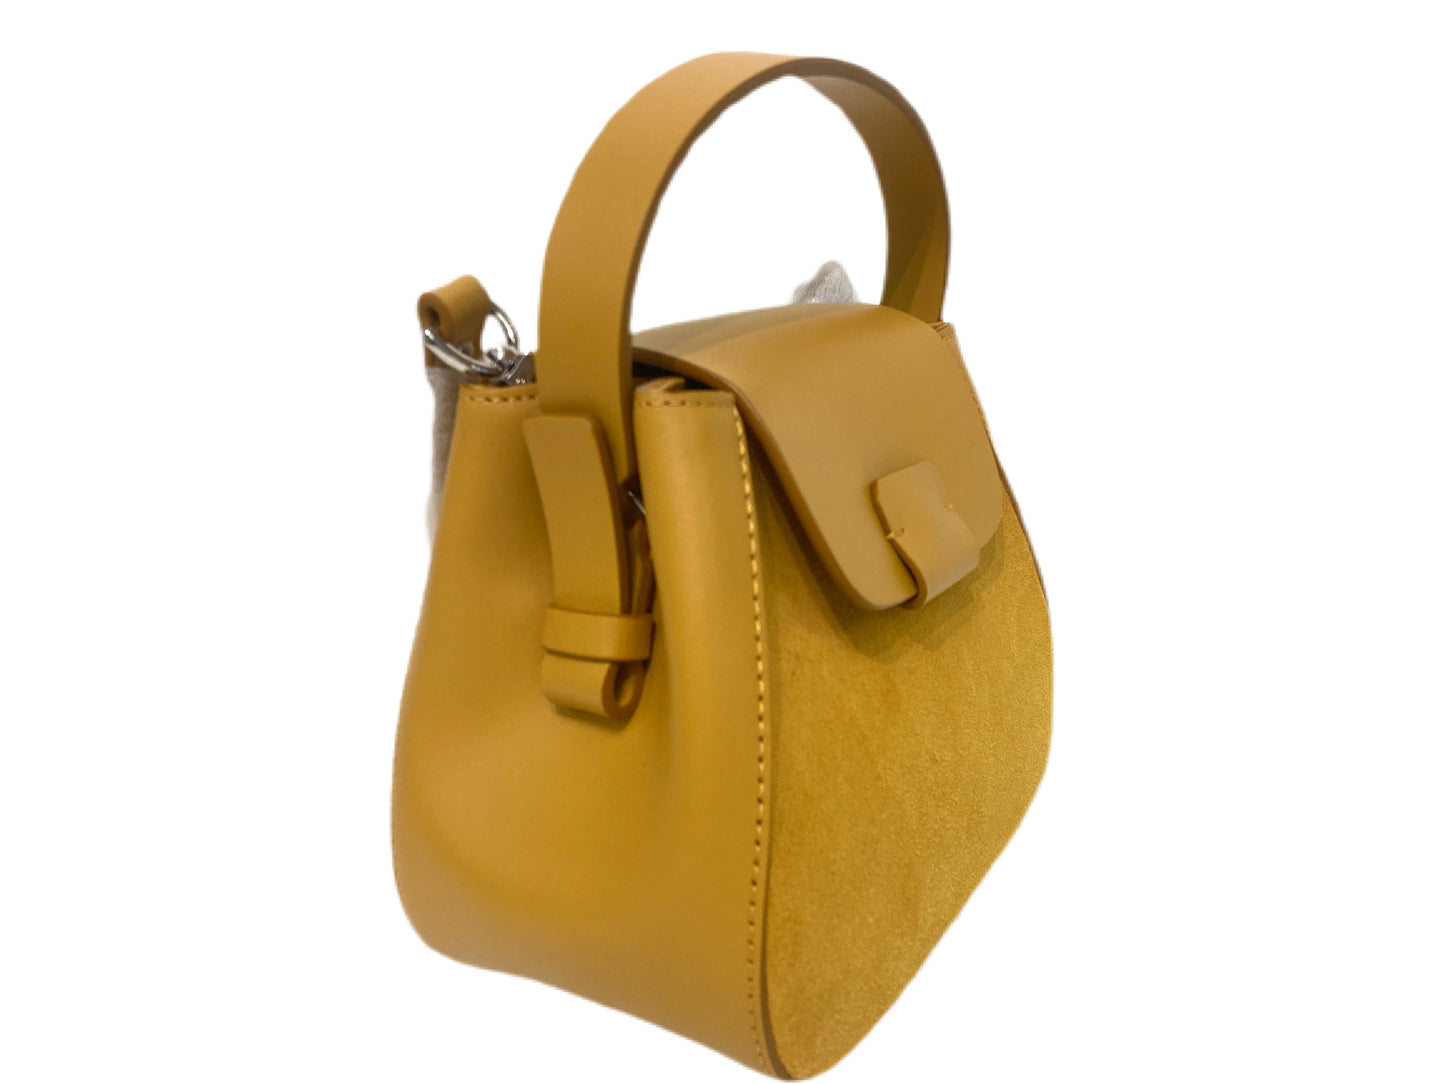 NICO GIANI Leather Top Handle Handbag Yellow